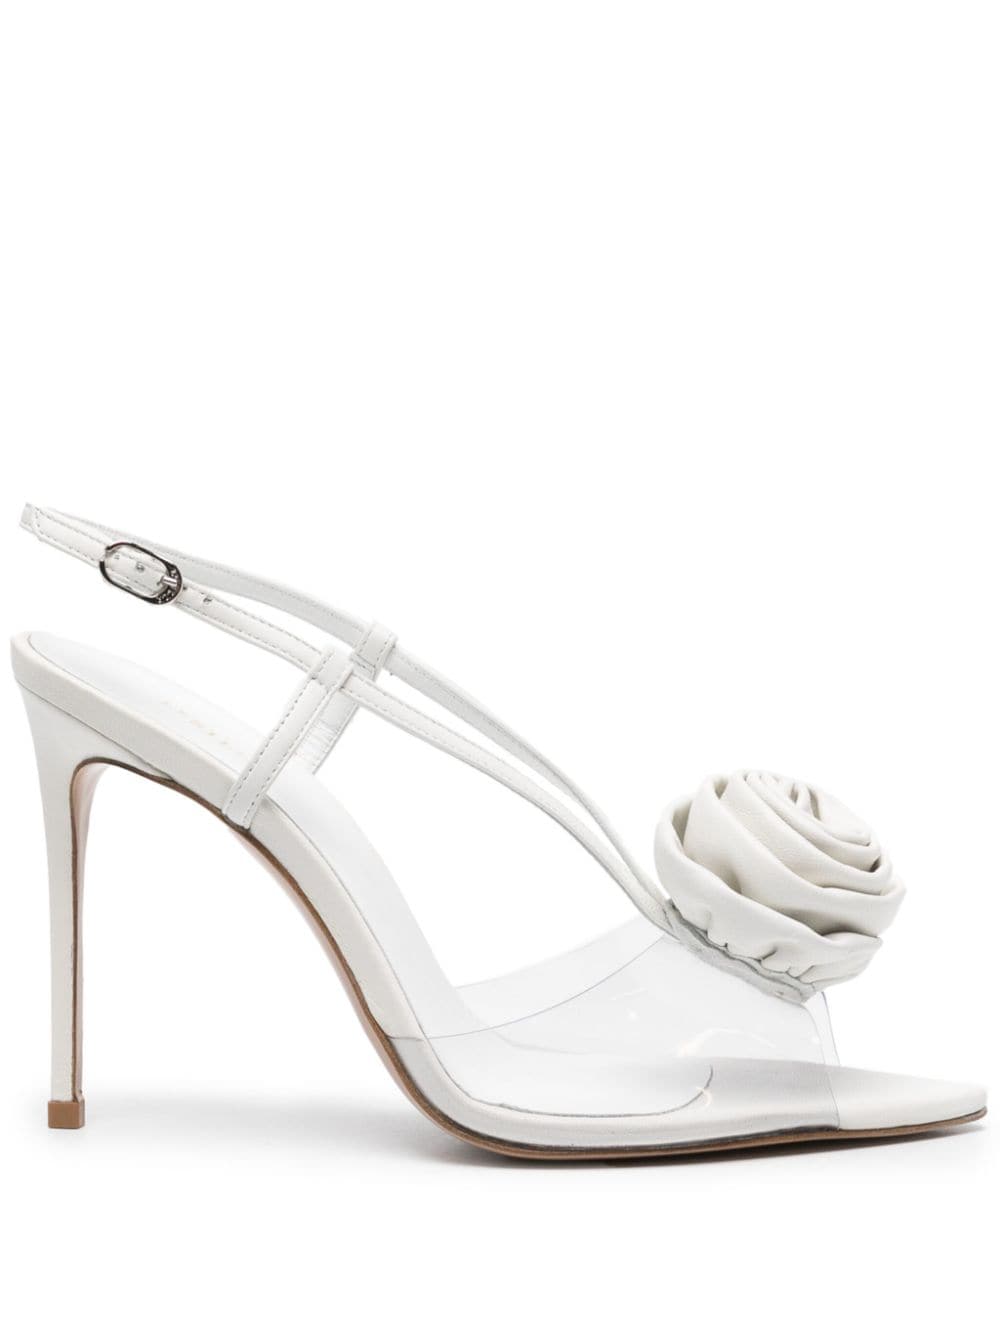 Le Silla Rose 110mm leather sandals - White von Le Silla